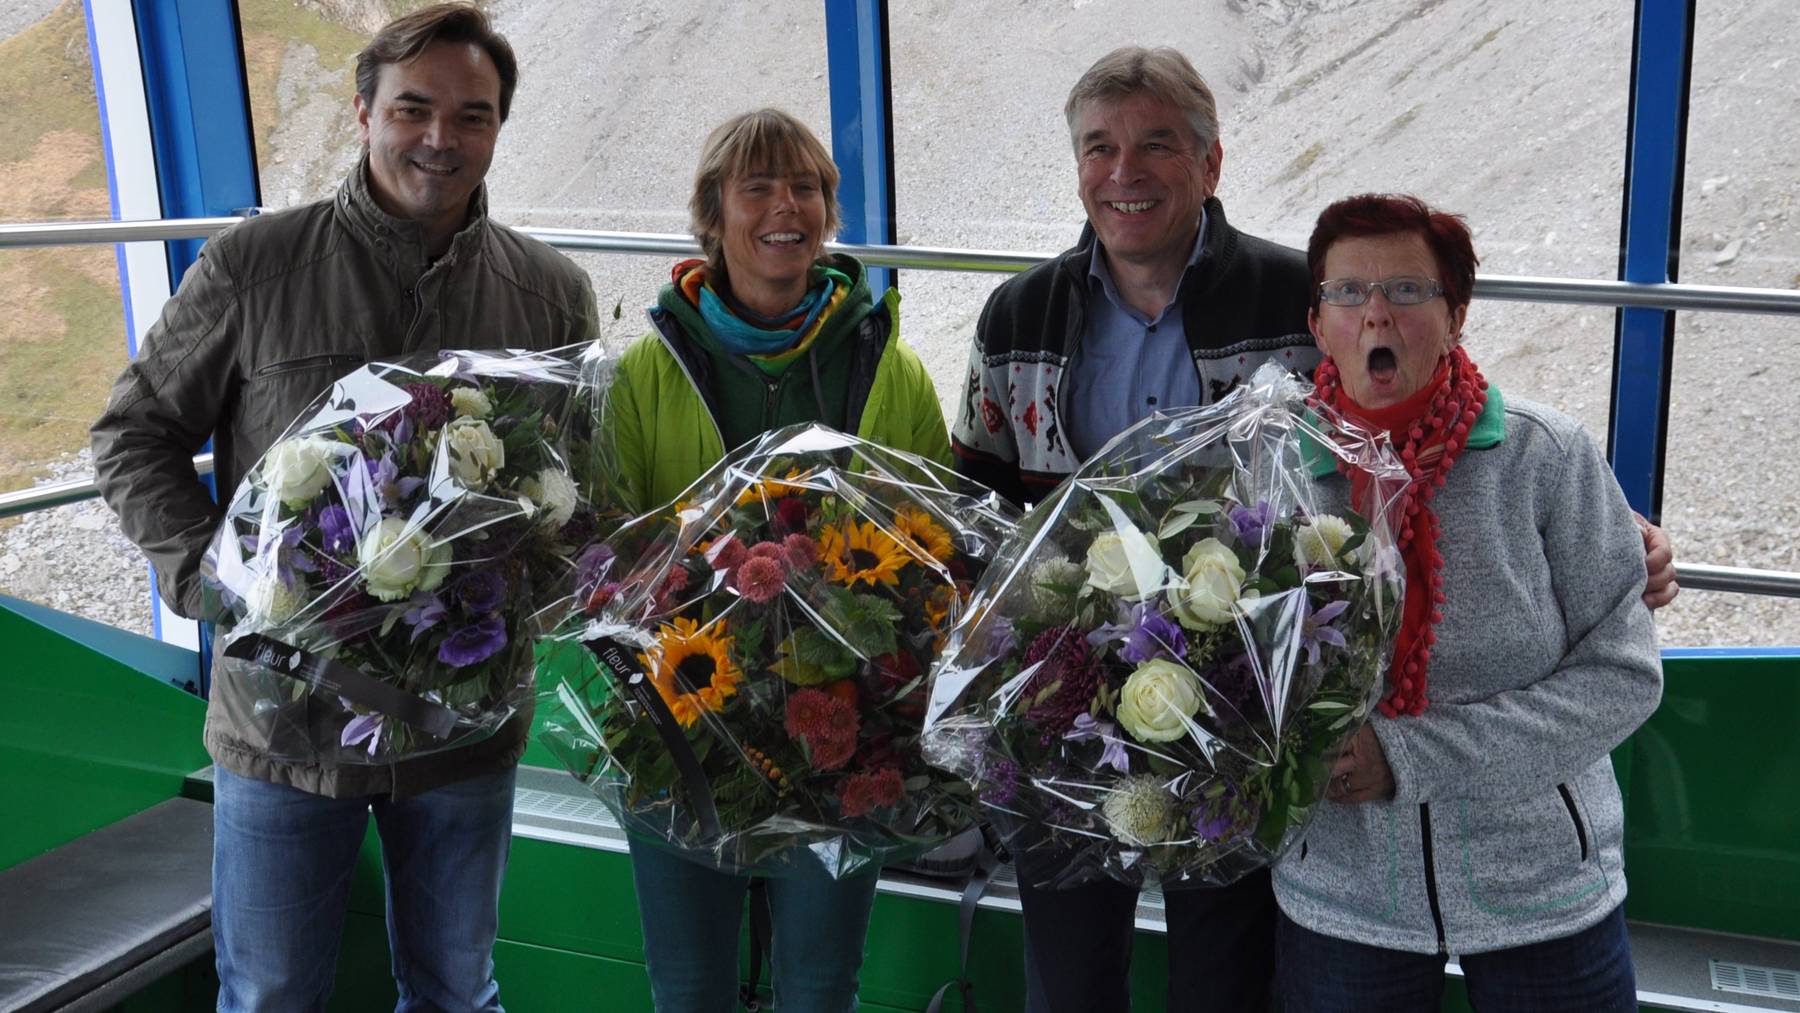 Blumen für die 25 Millionste Besucherin Ursula Baumberger (in grün)  und die beiden Fahrgäste vor und nach der Jubiläumsmarke